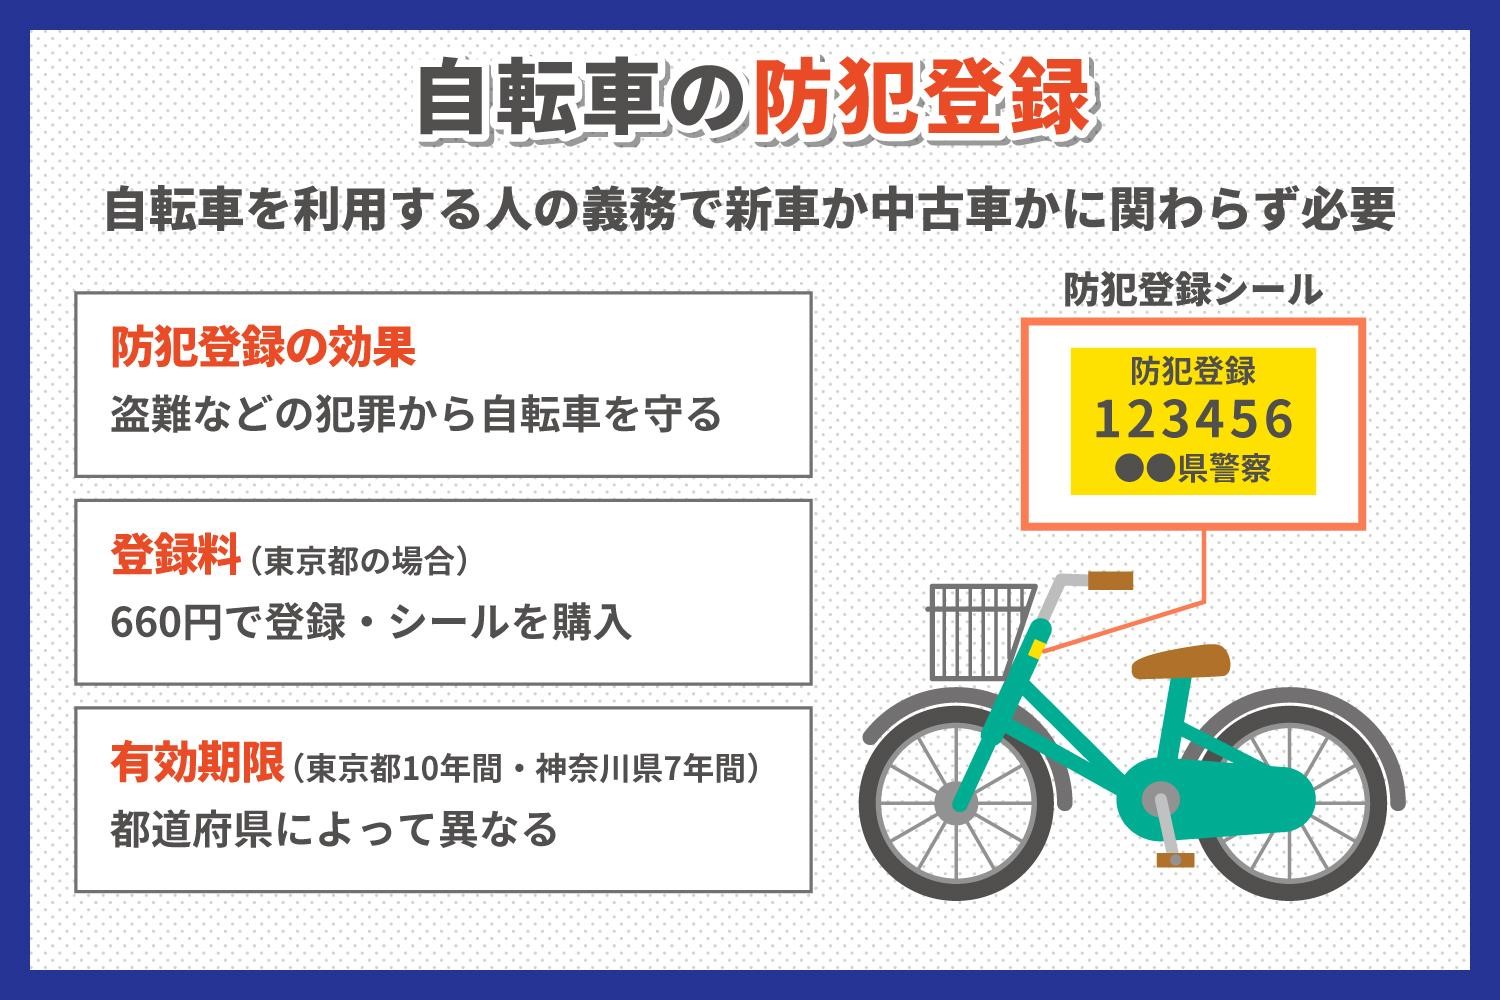 通販で購入した自転車にも防犯登録は必要